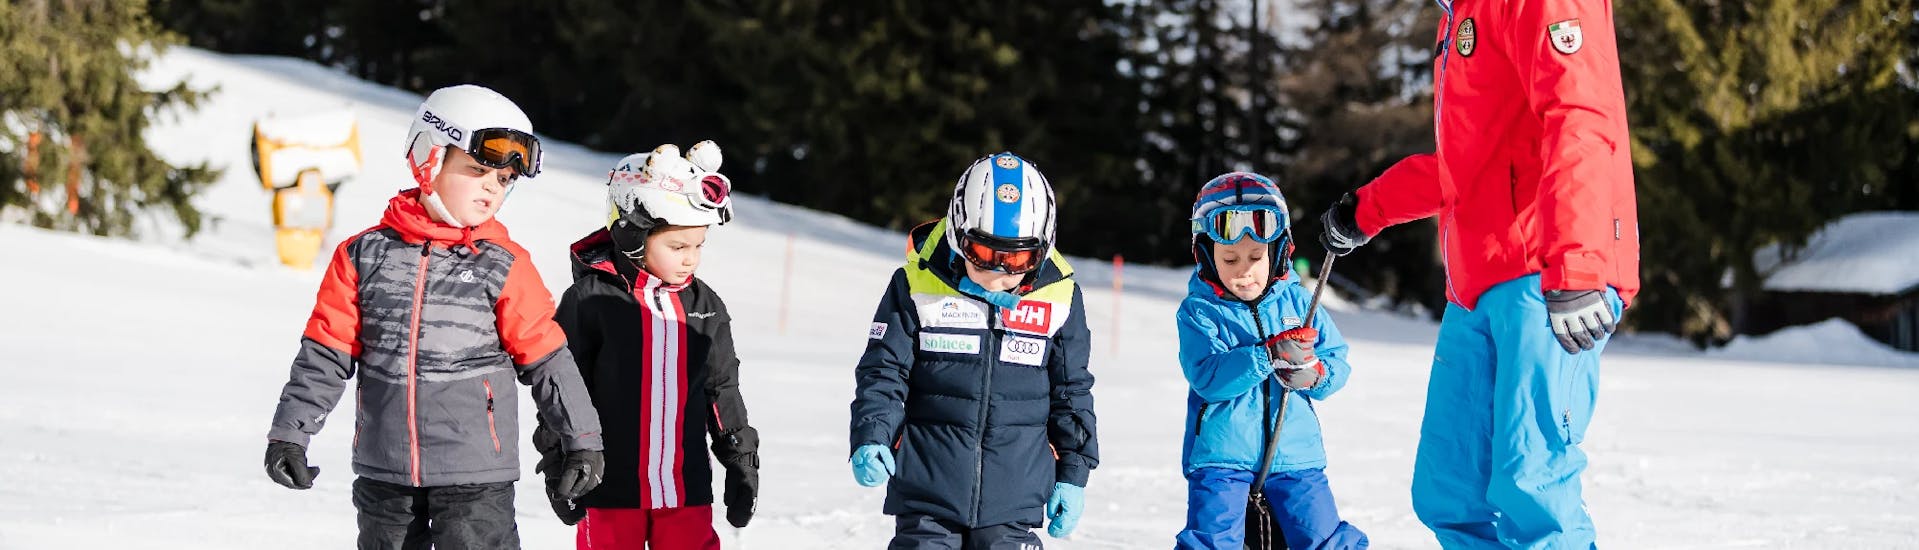 Cours de ski Enfants dès 5 ans pour Tous niveaux.